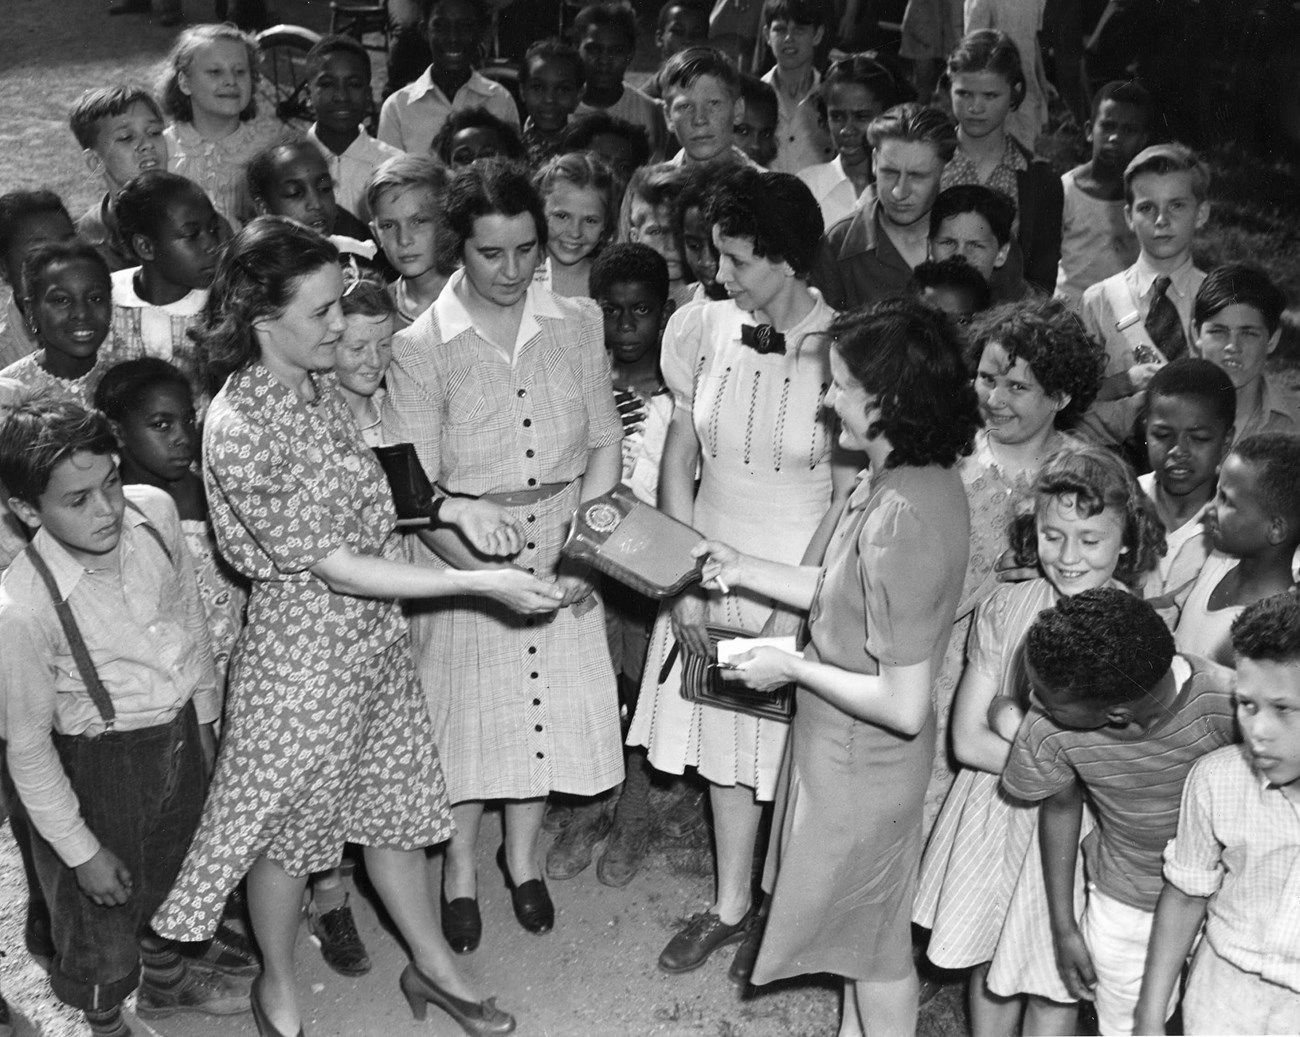 A Clark school representative receives a plaque after winning a five school meet, circa 1941